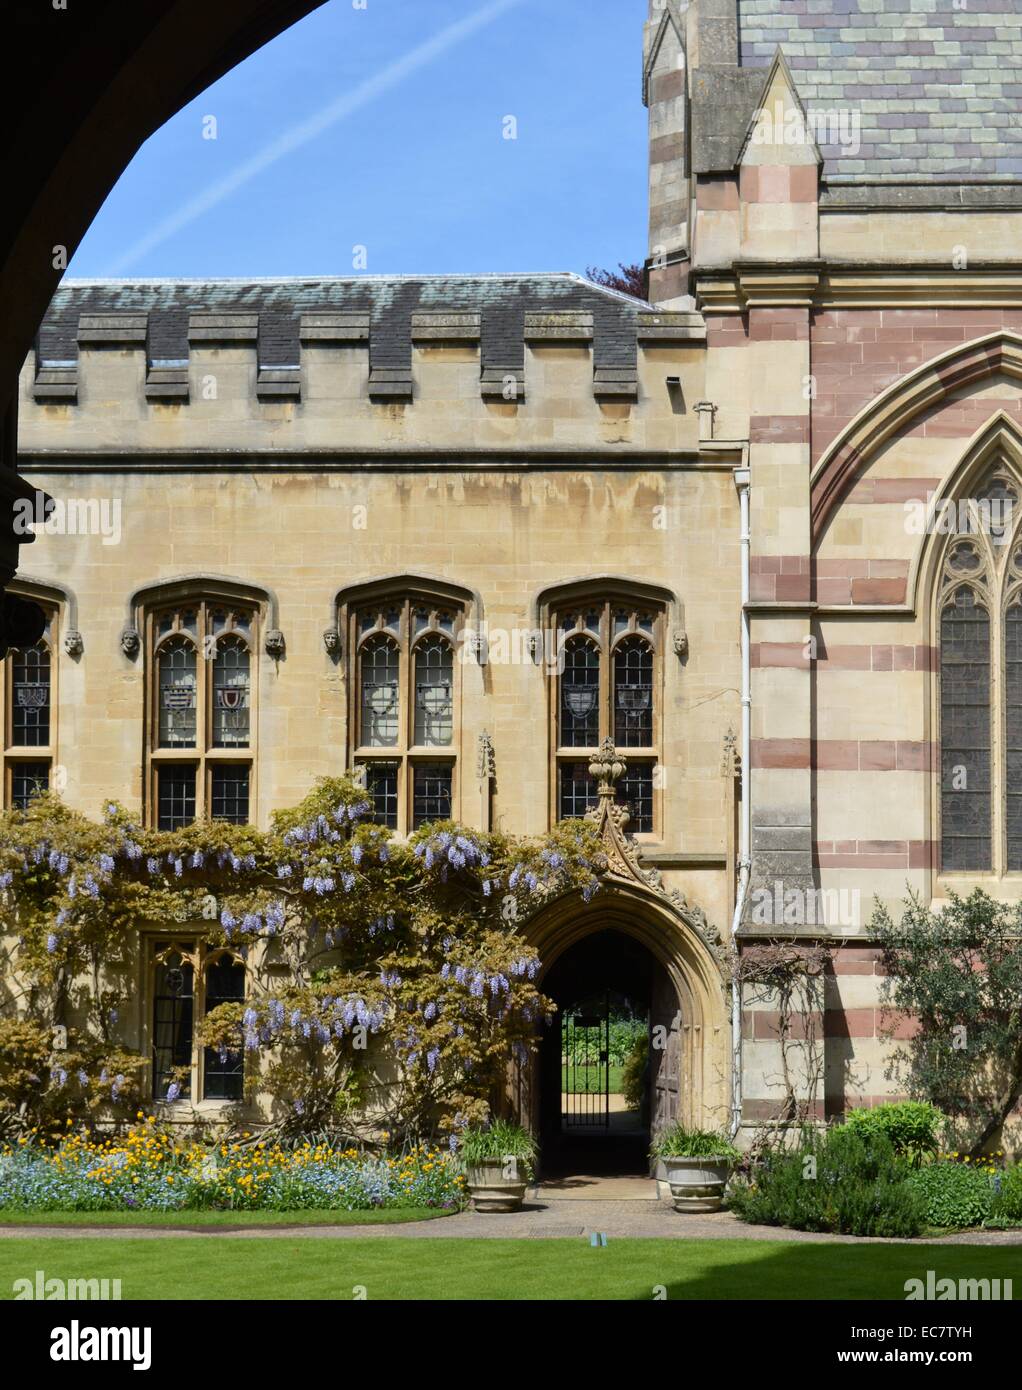 Invito al Balliol College, uno dei odlest College di Oxford, risalente al 1263. Foto Stock